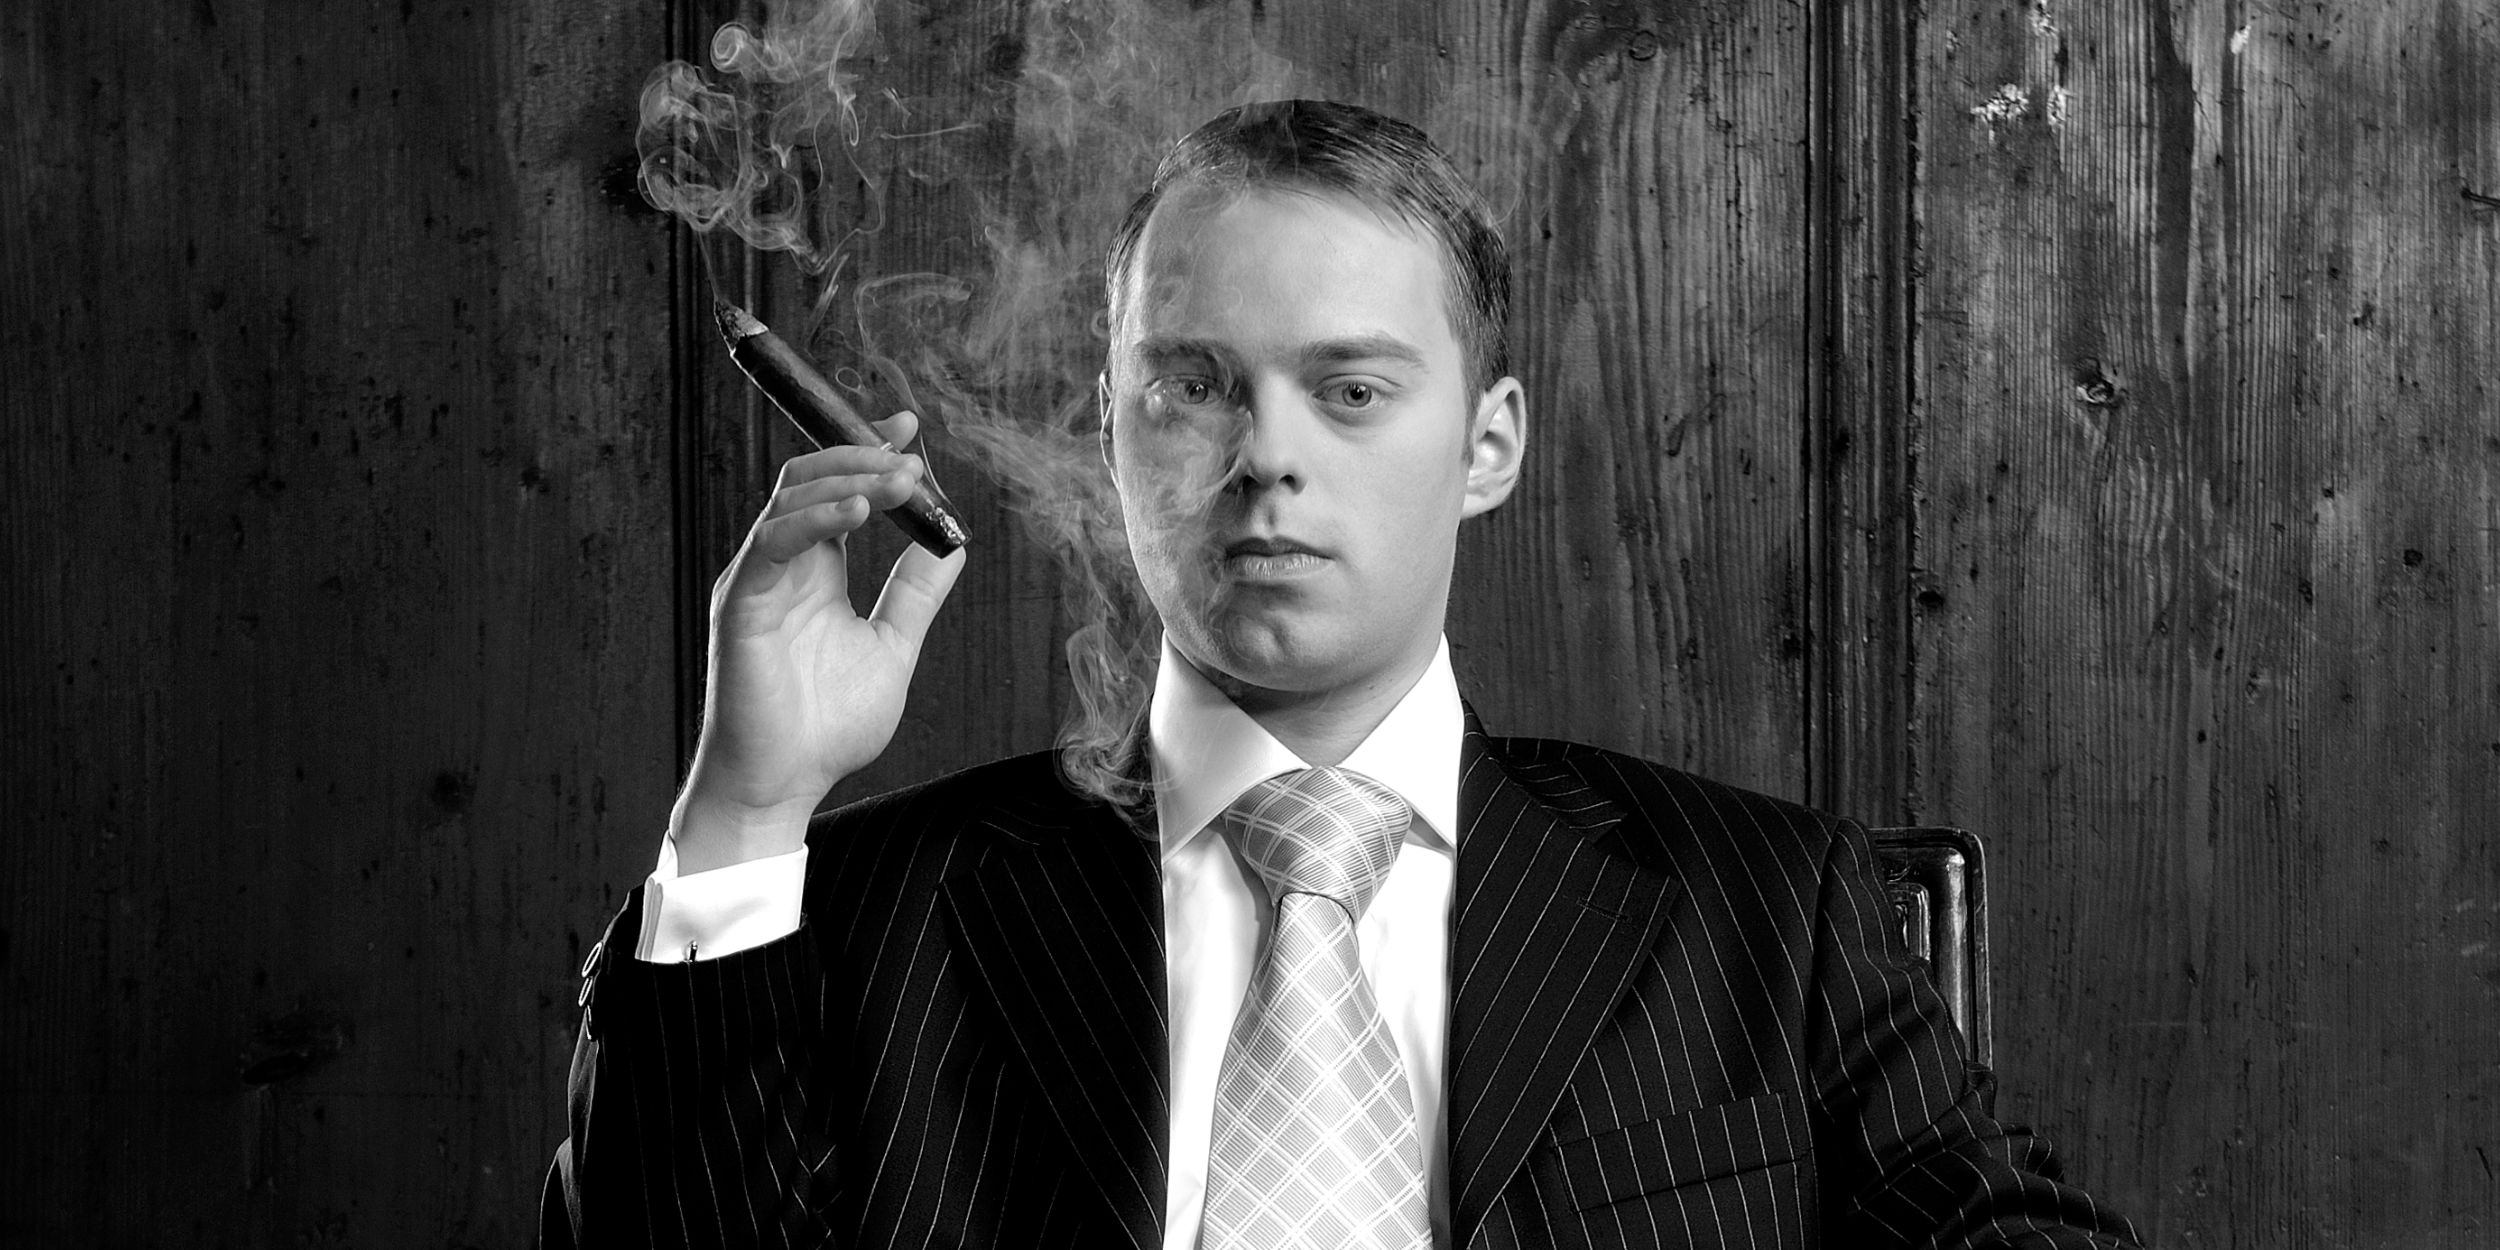 People Fotografie Stuttgart und Umgebung Charakter Portrait Balboa Zigarren Mann im Anzug und Krawatte mit einer Torpedo Zigarre